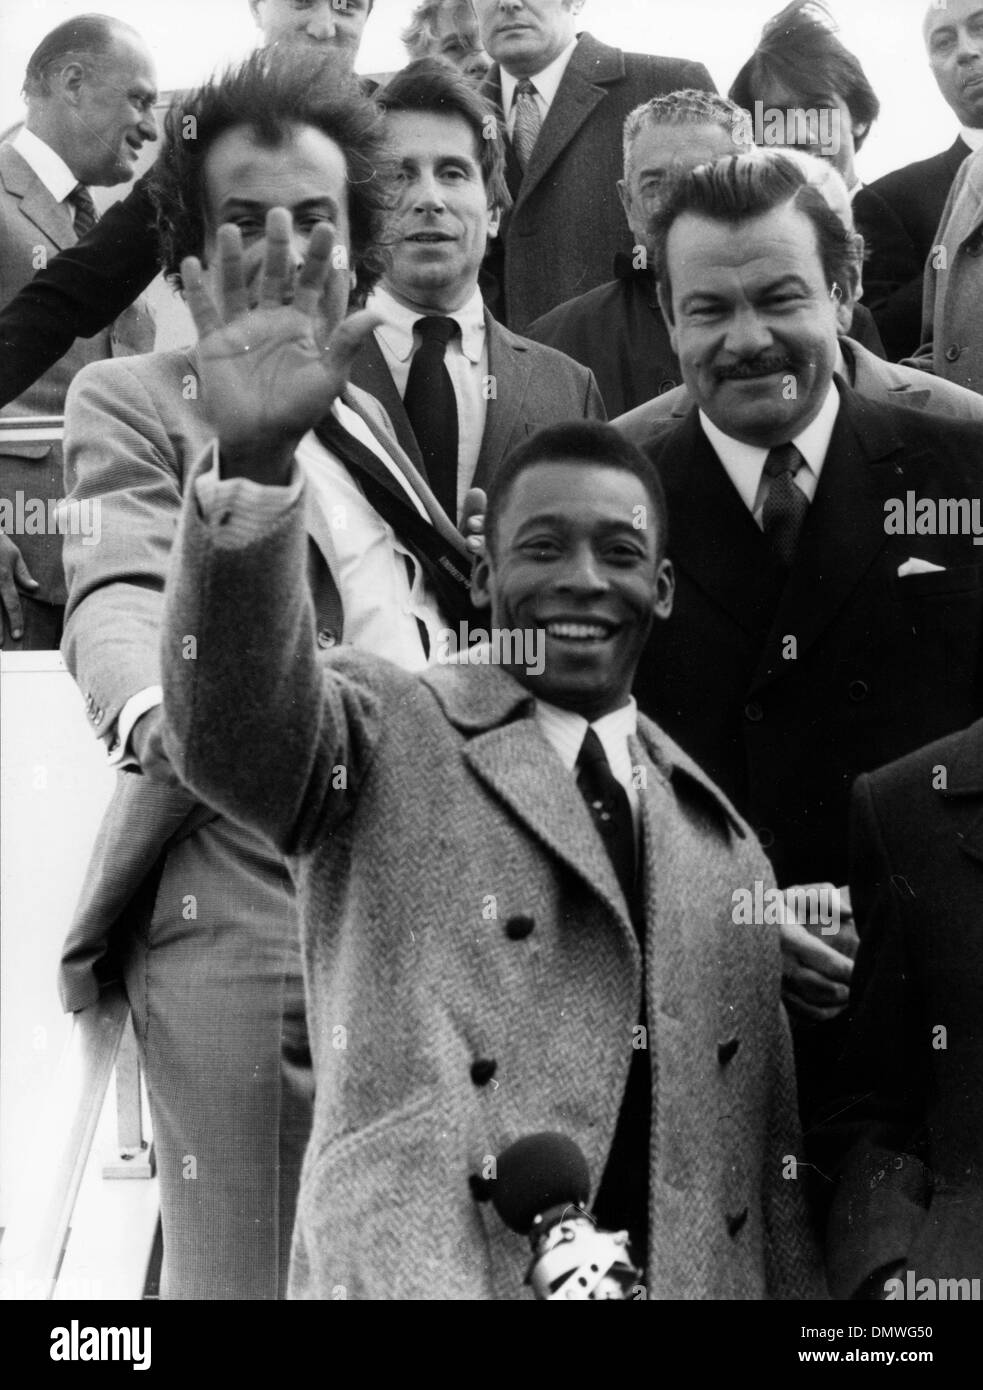 Marzo 27, 1970 - Parigi, Francia - Brasiliano giocatore di calcio EDSON NASCIMENTO 'PELE' che arrivano all'aeroporto di Orly a Parigi. (Credito Immagine: © Keystone Pictures USA/ZUMAPRESS.com) Foto Stock